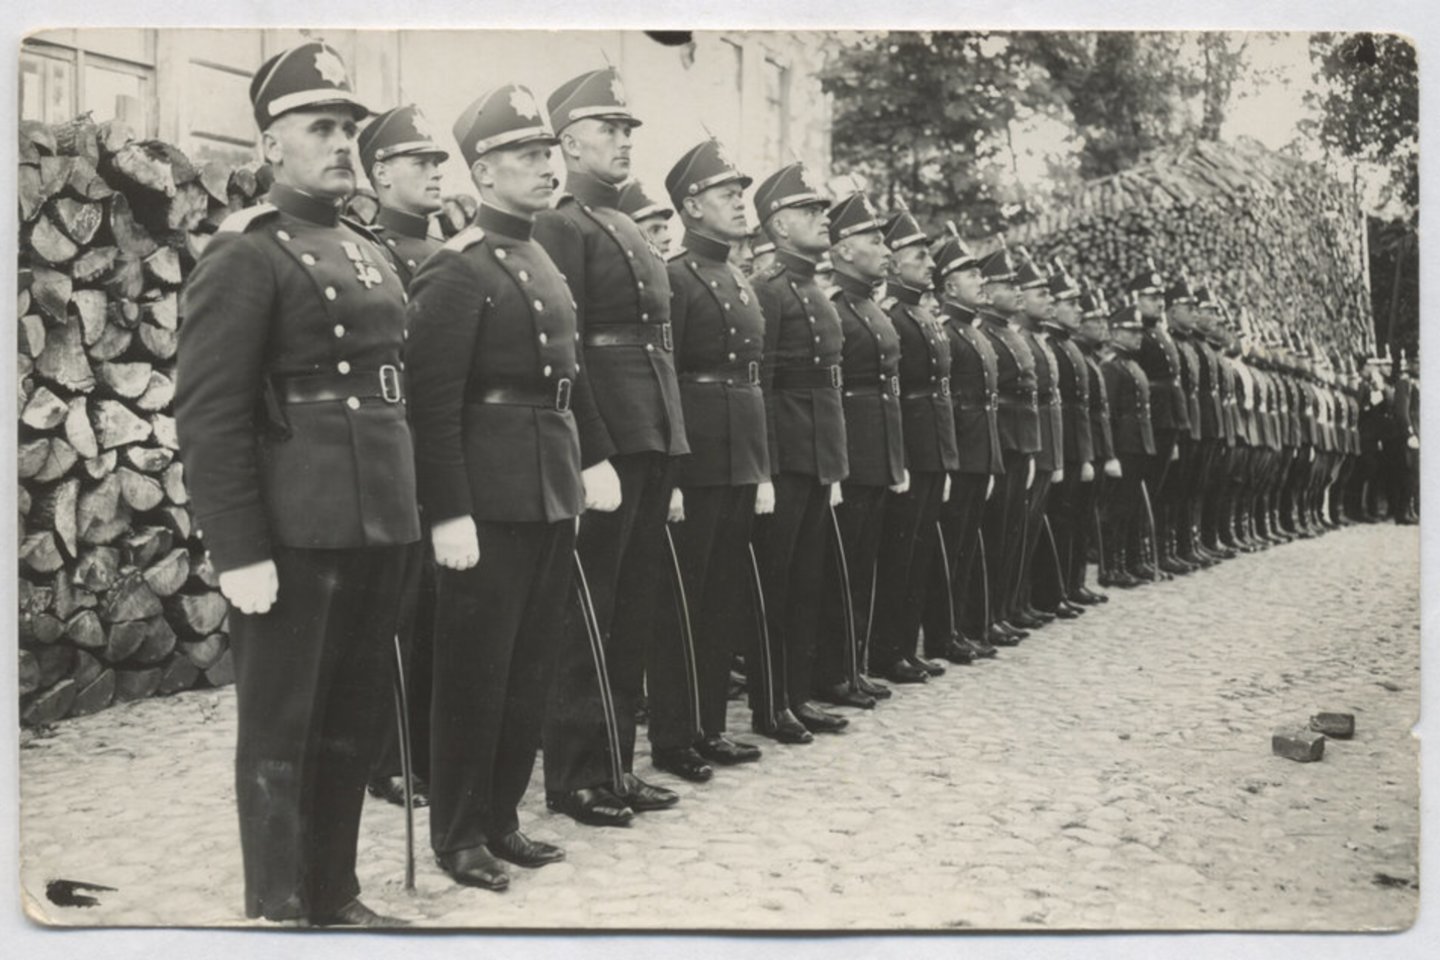  Aukštesniosios policijos mokyklos kursantai mokyklos kieme prieš išvykimą į bažnyčią, 1931 m.<br> LYA nuotr.